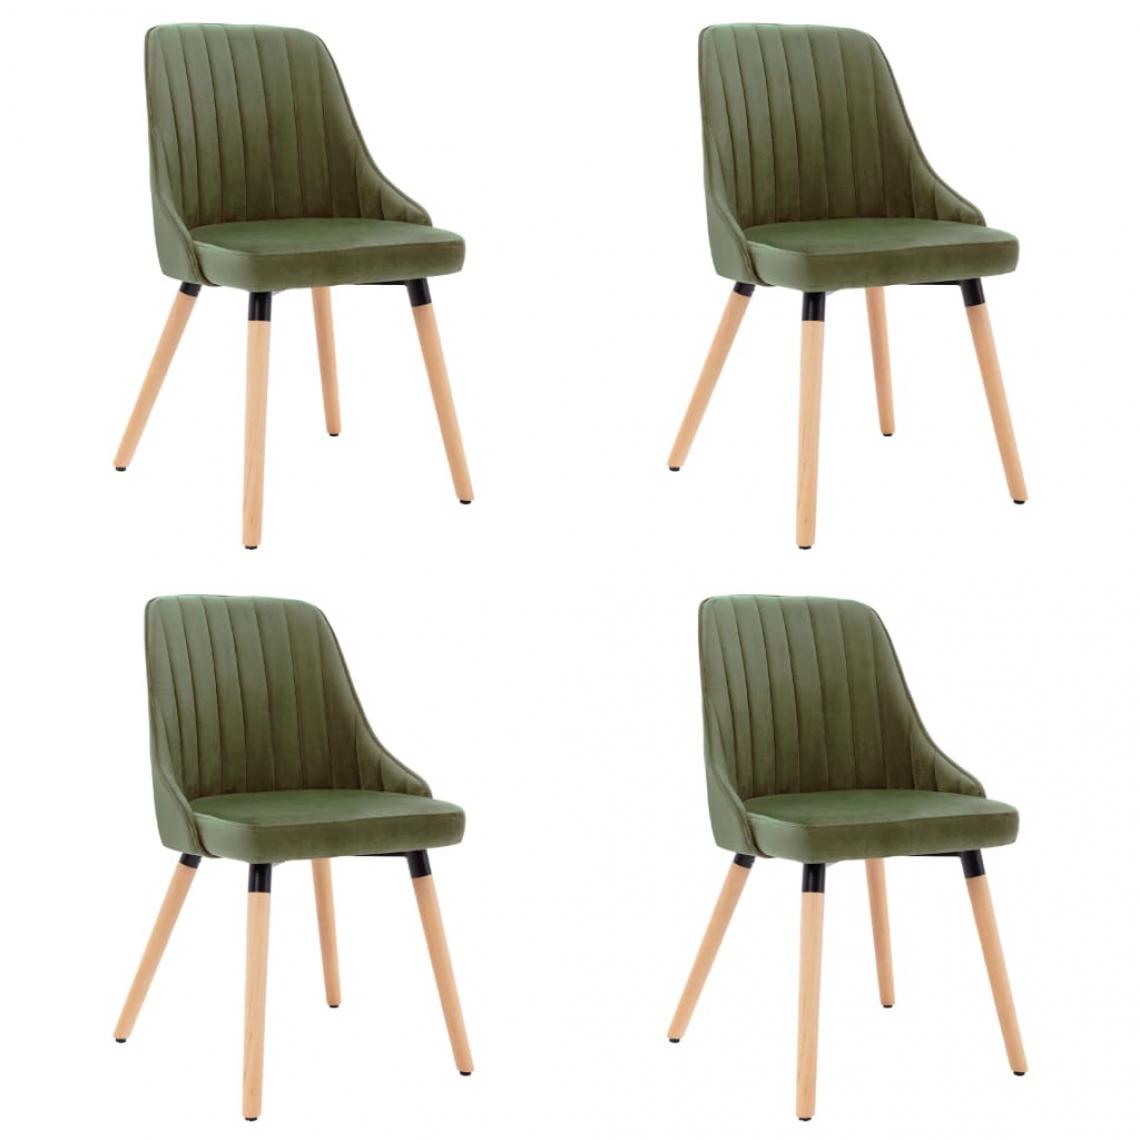 Decoshop26 - Lot de 4 chaises de salle à manger cuisine design moderne velours vert clair CDS022018 - Chaises